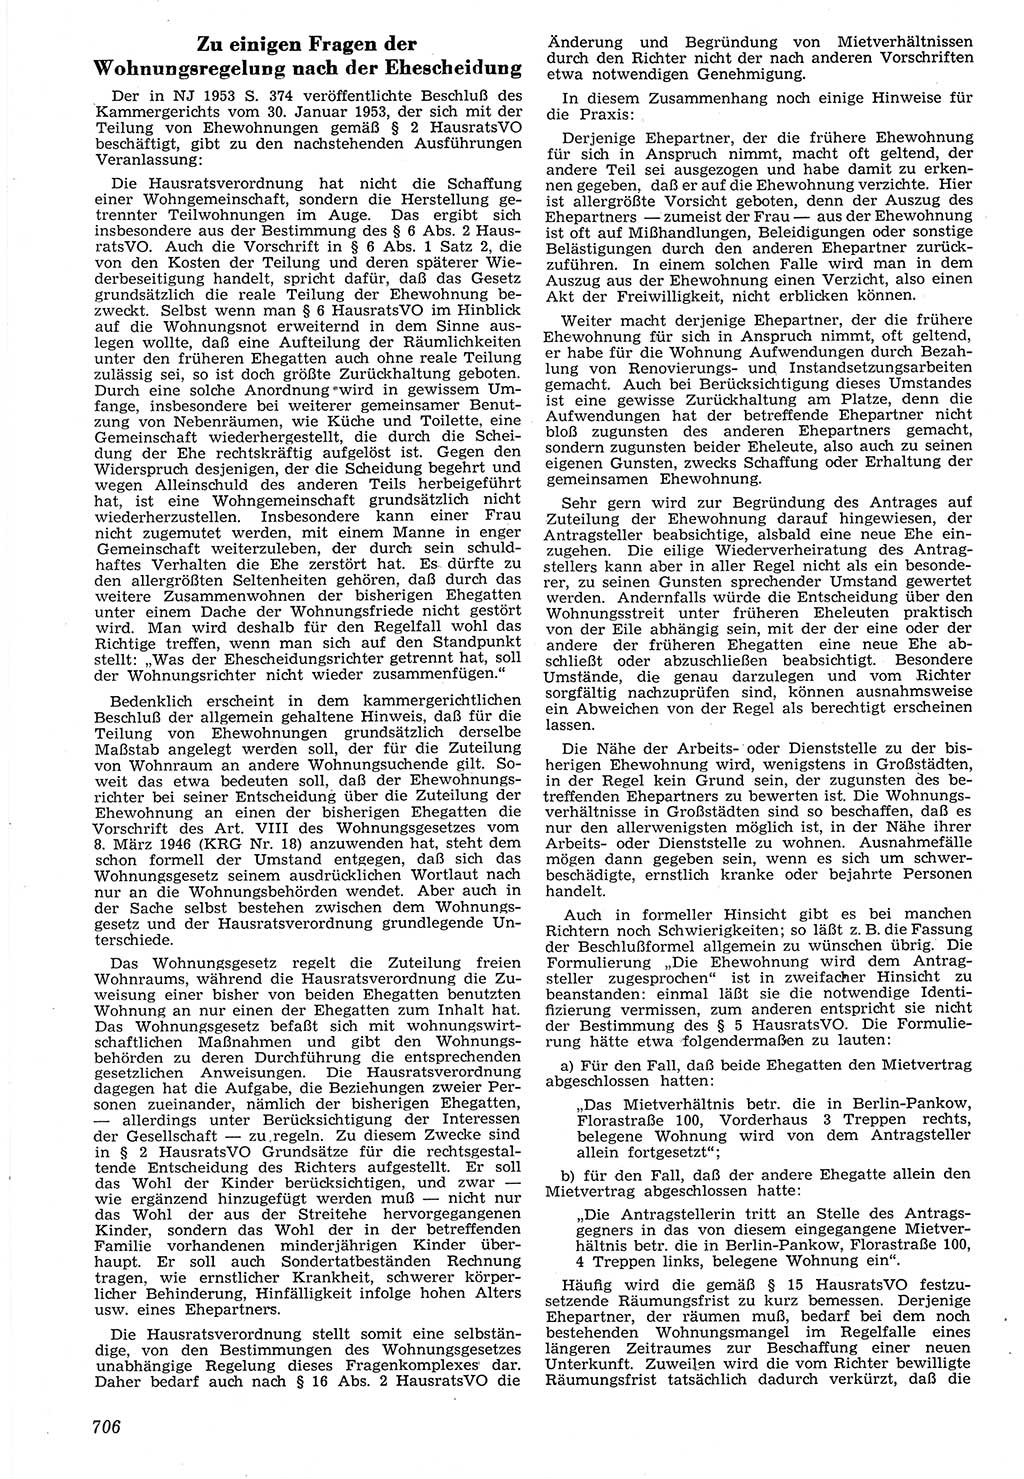 Neue Justiz (NJ), Zeitschrift für Recht und Rechtswissenschaft [Deutsche Demokratische Republik (DDR)], 7. Jahrgang 1953, Seite 706 (NJ DDR 1953, S. 706)